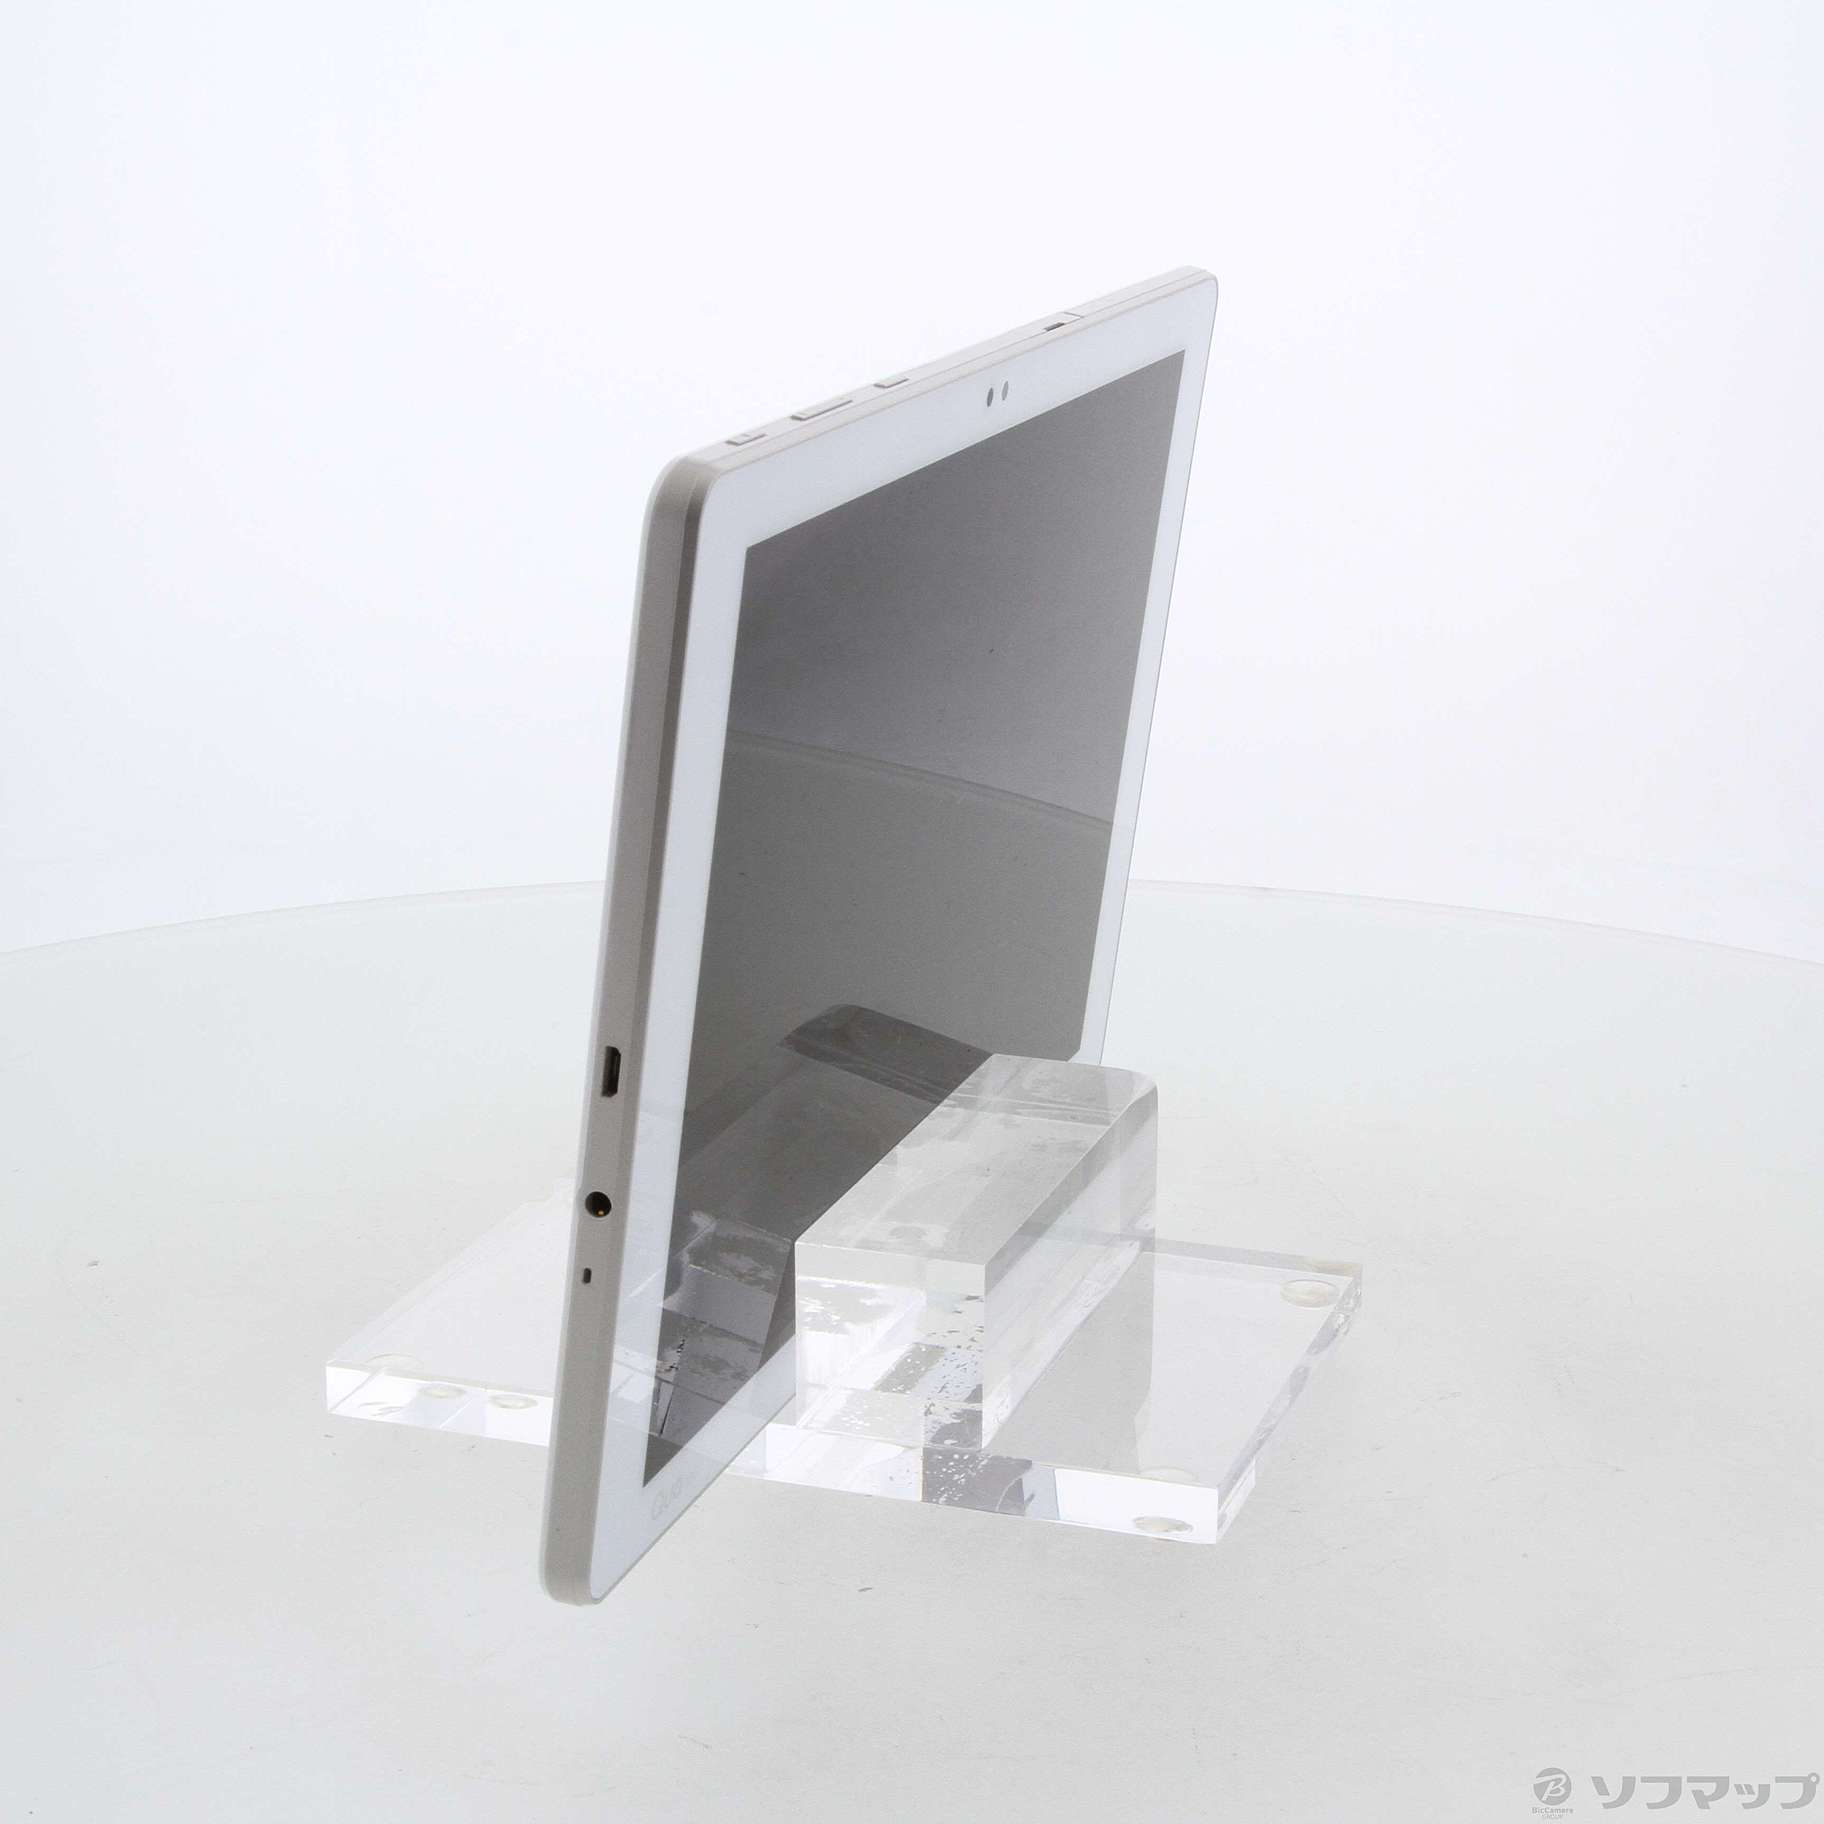 Qua tab PZ LGT32  ホワイト タブレット 白スマホ/家電/カメラ